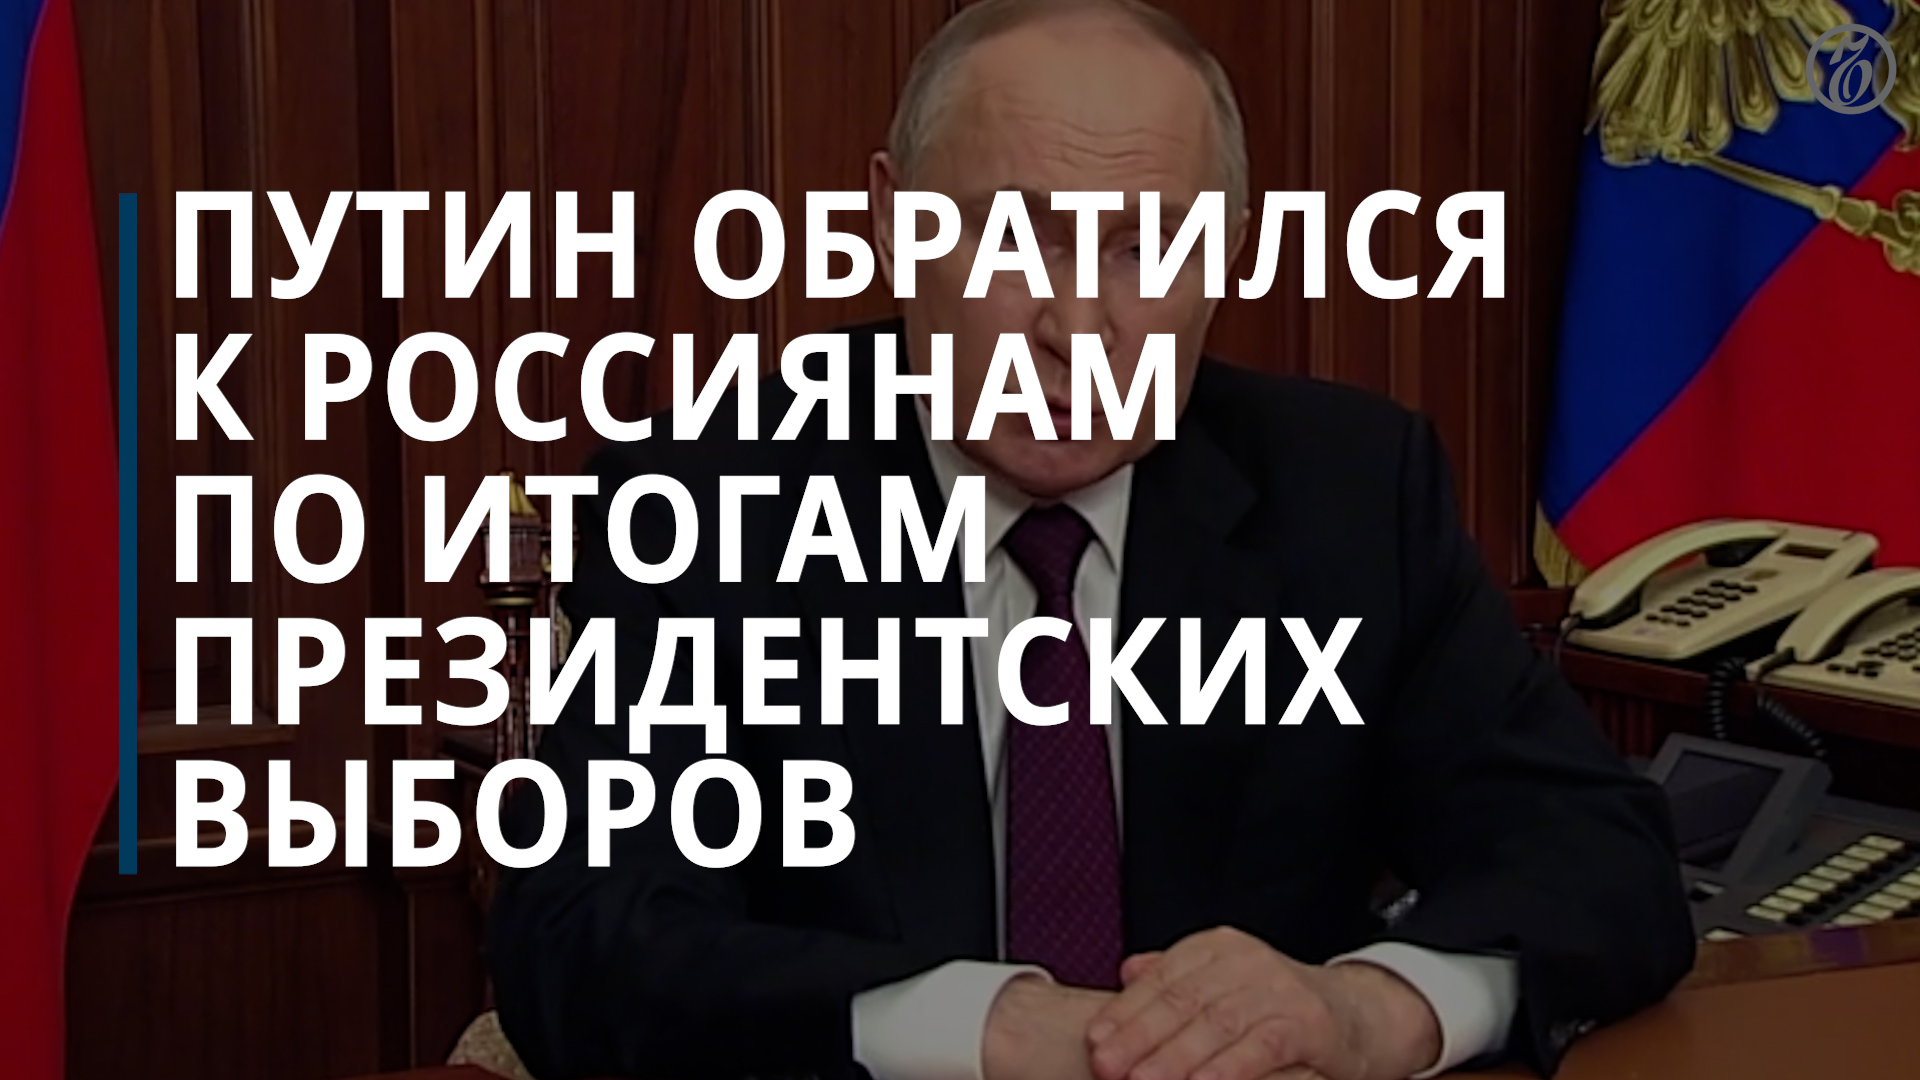 Путин обратился к россиянам по итогам президентских выборов